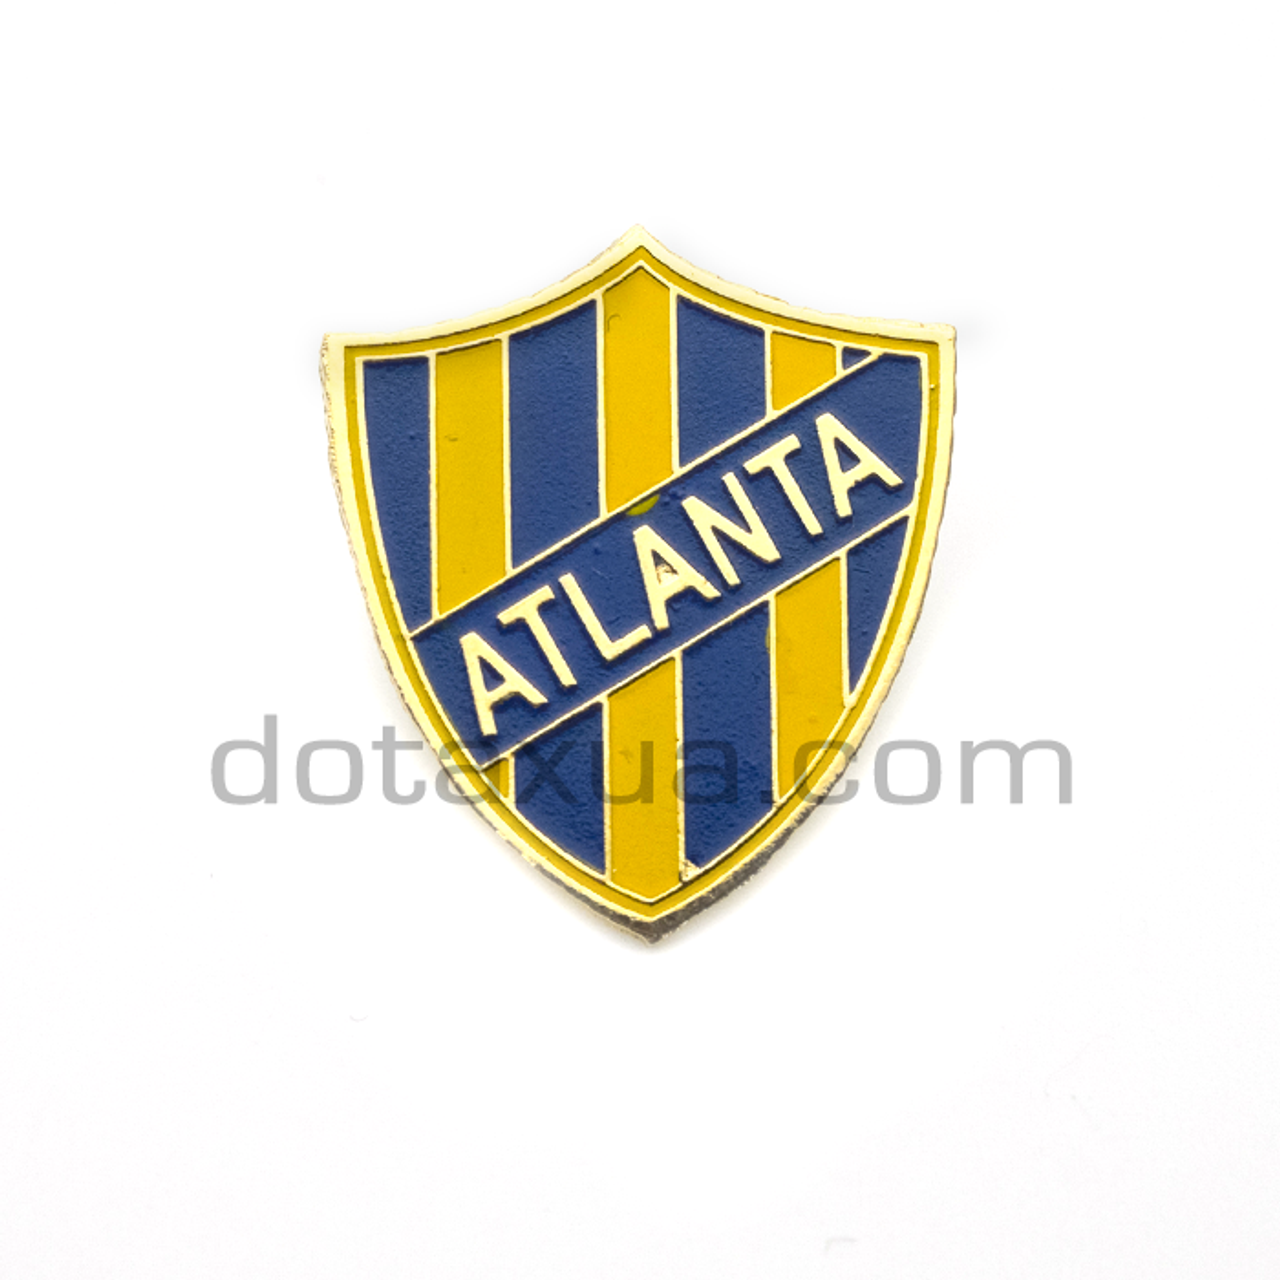 Club Atlético Atlanta - - Club Atlético Atlanta - Oficial